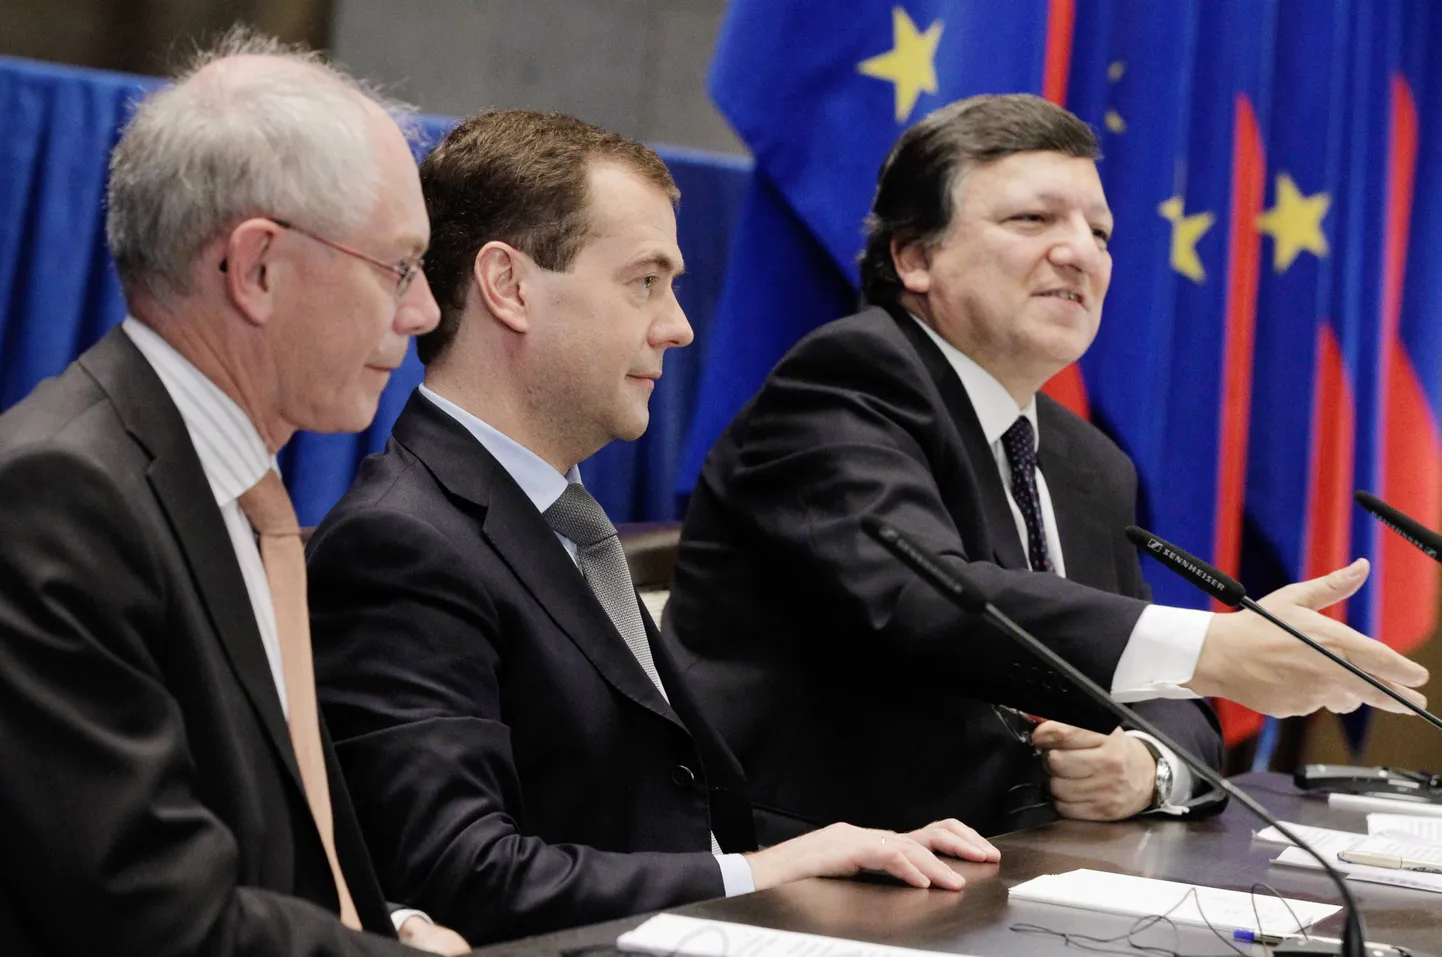 Участники саммита (слева направо): президент ЕС Херман ван Ромпей, Дмитрий Медведев и президент Еврокомиссии Жозе Мануэль Баррозо.